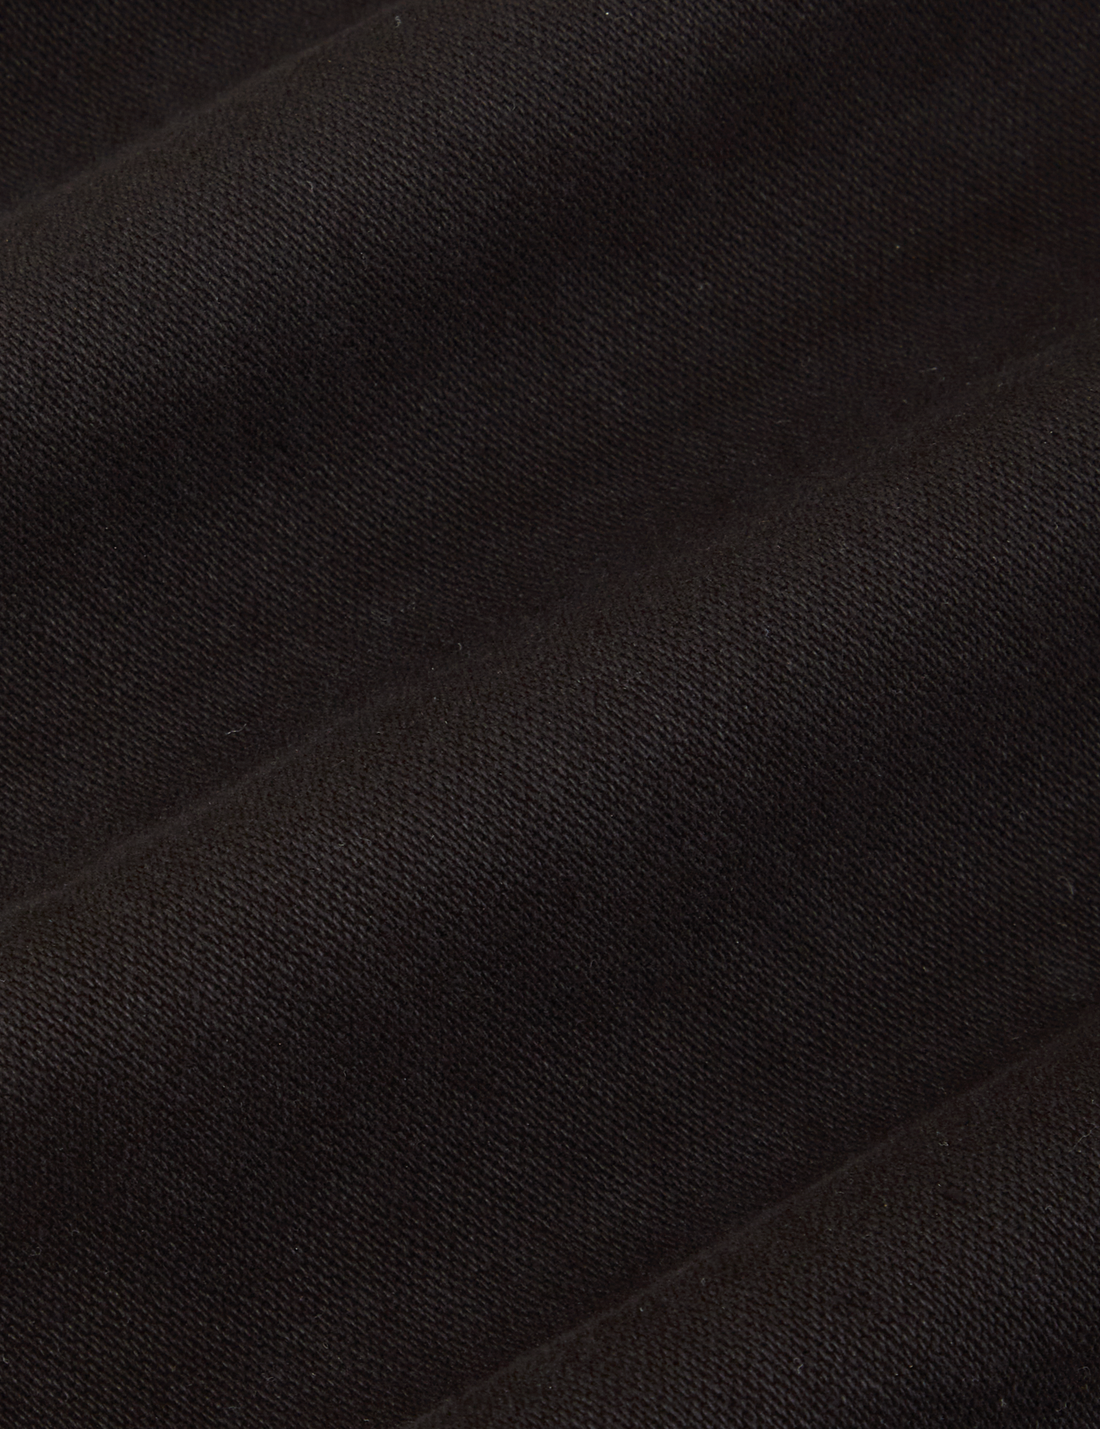 Original Overalls in Black fabric detail